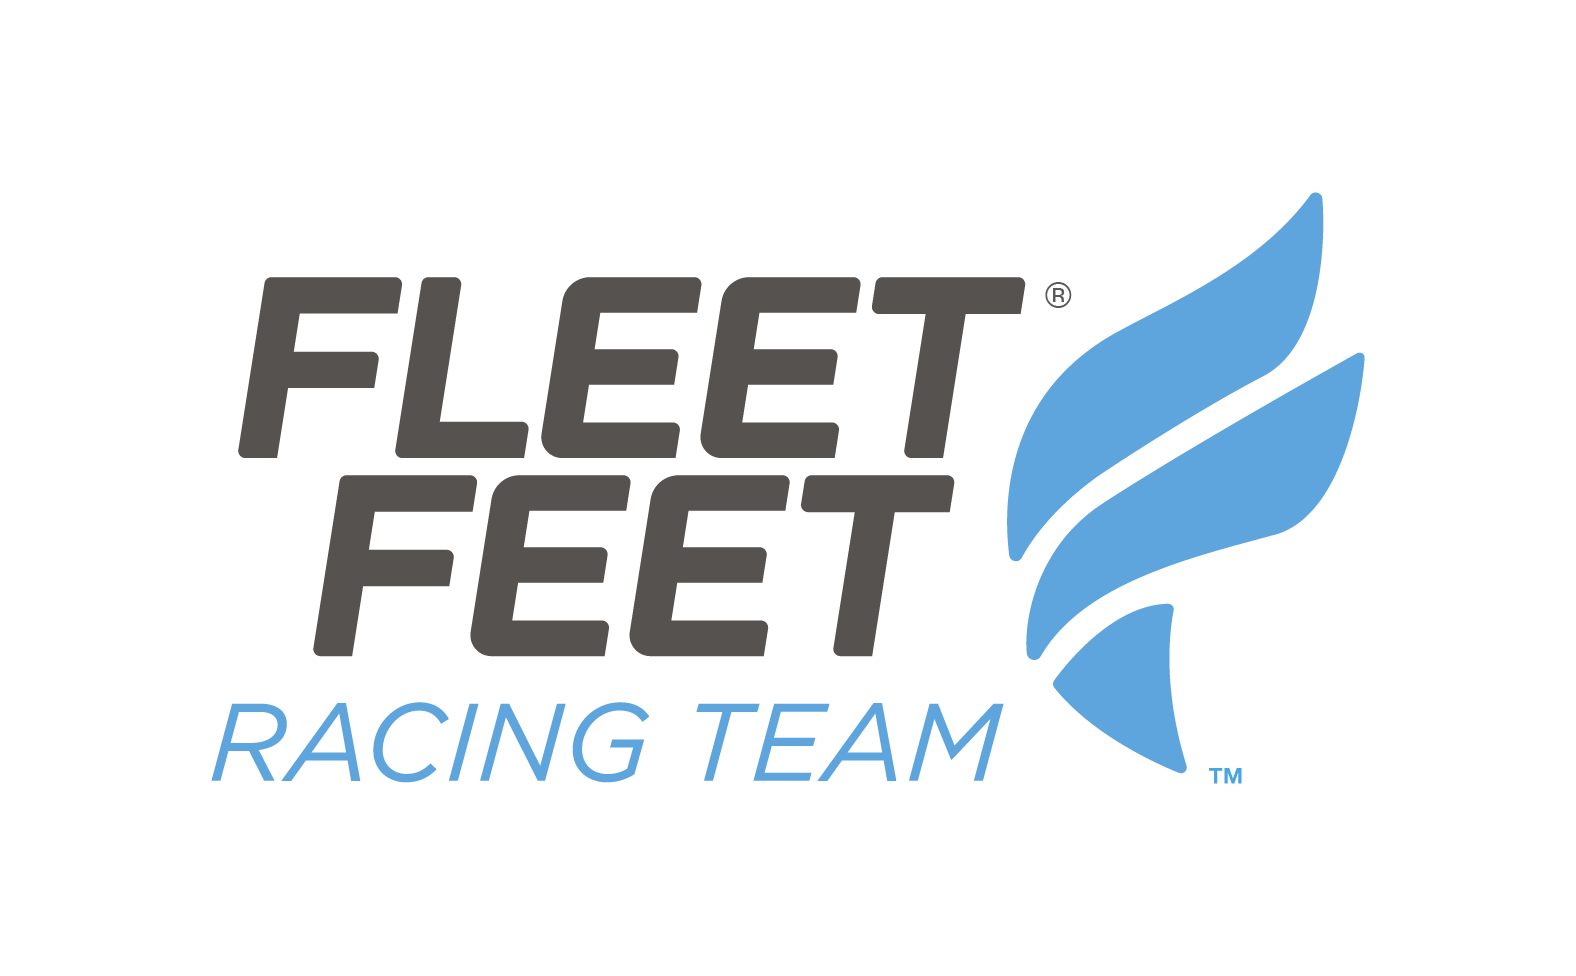 Buy > fleet feet 5k > in stock